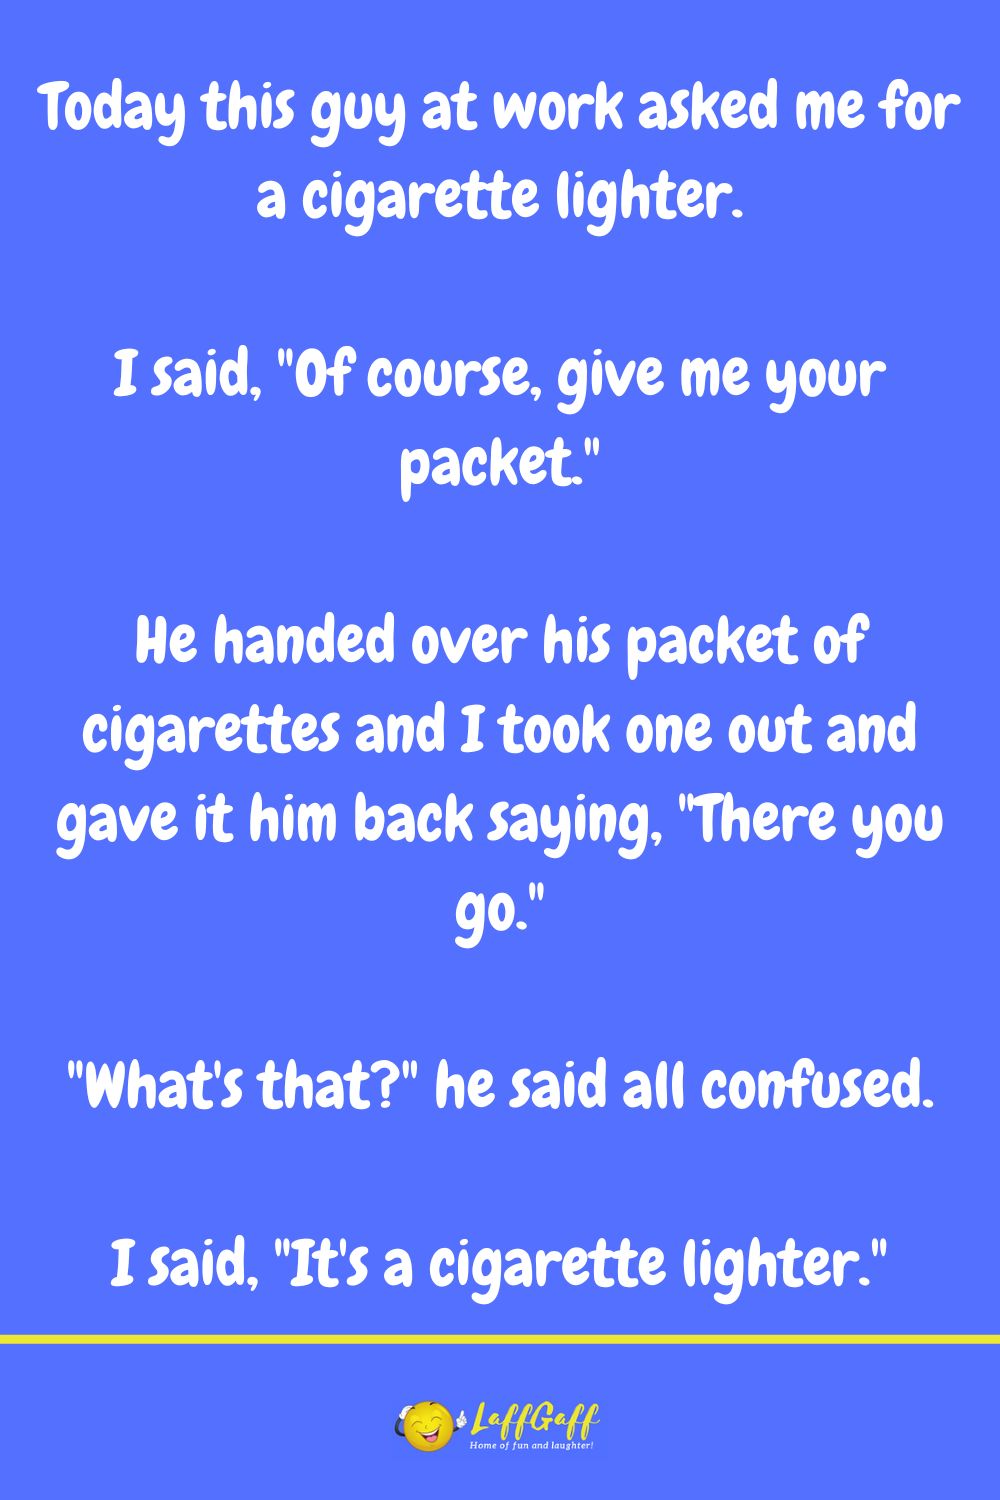 Cigarette lighter joke from LaffGaff.